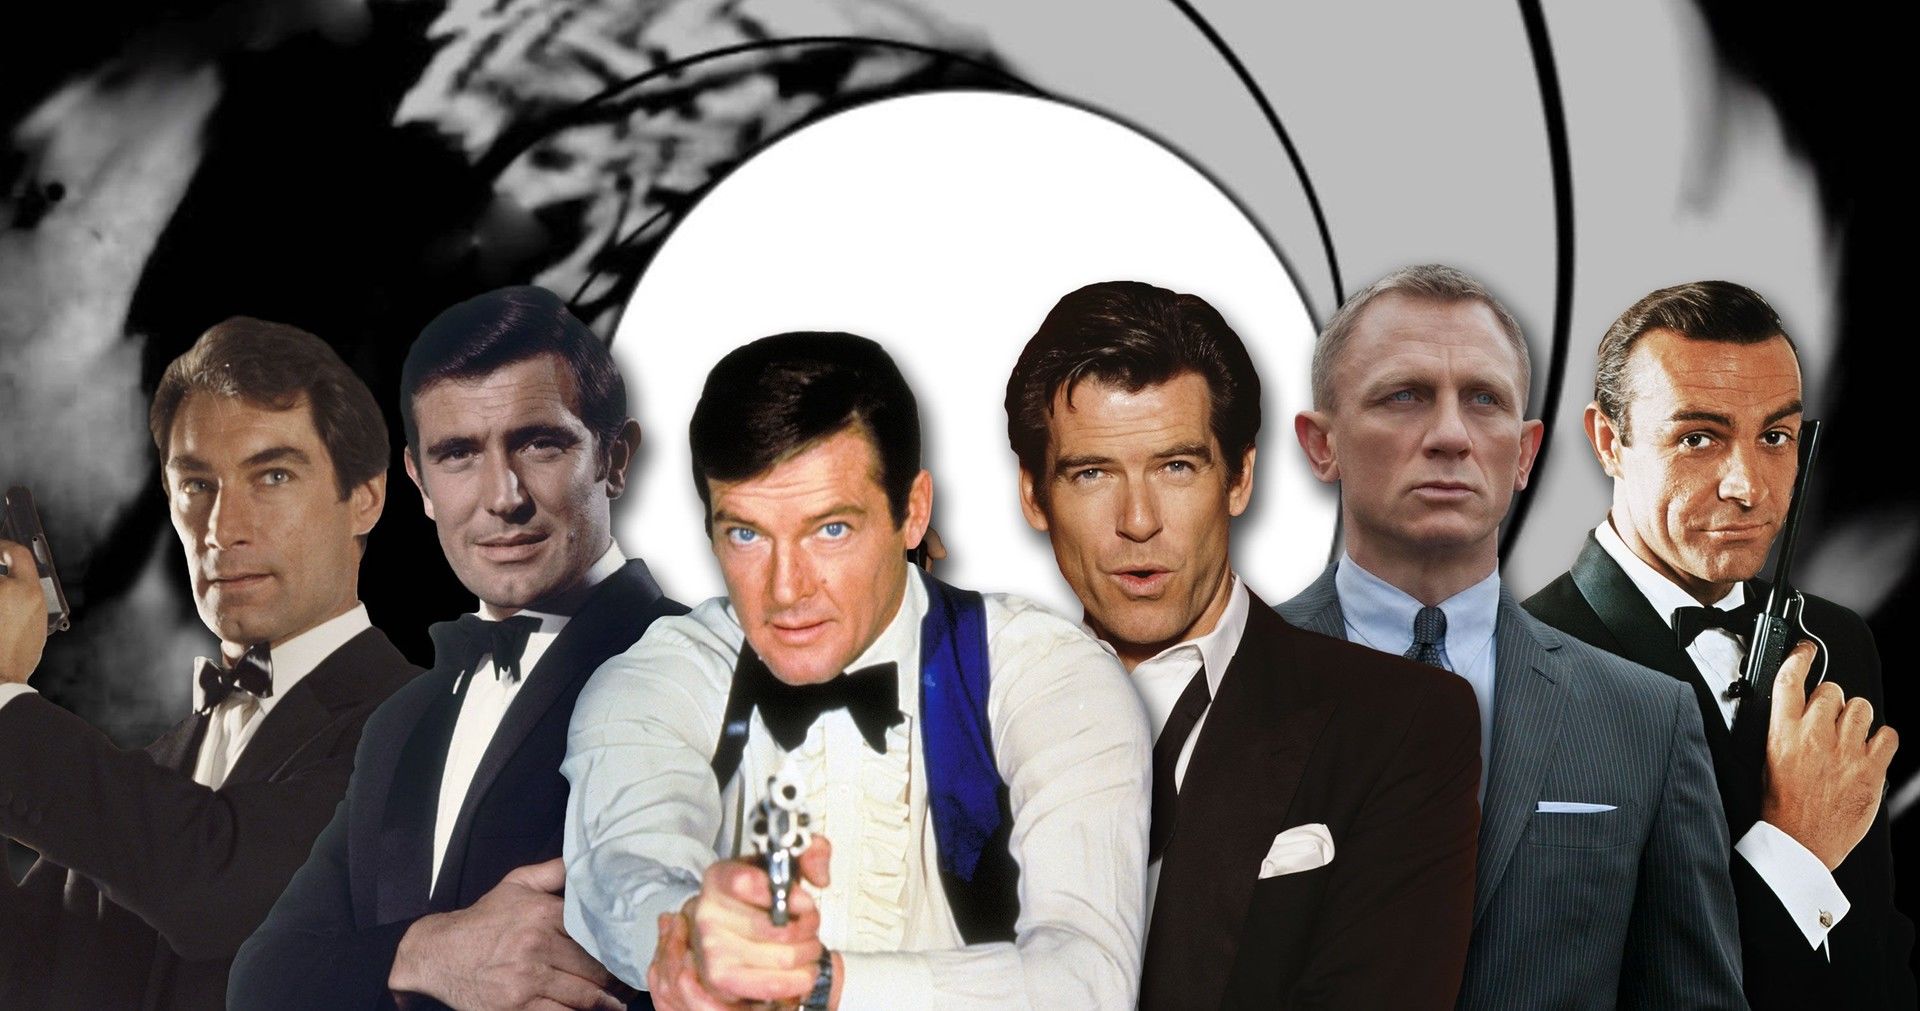 تصاویر هوش مصنوعی از کاندیداهای اصلی نقش جیمز باند جدید
